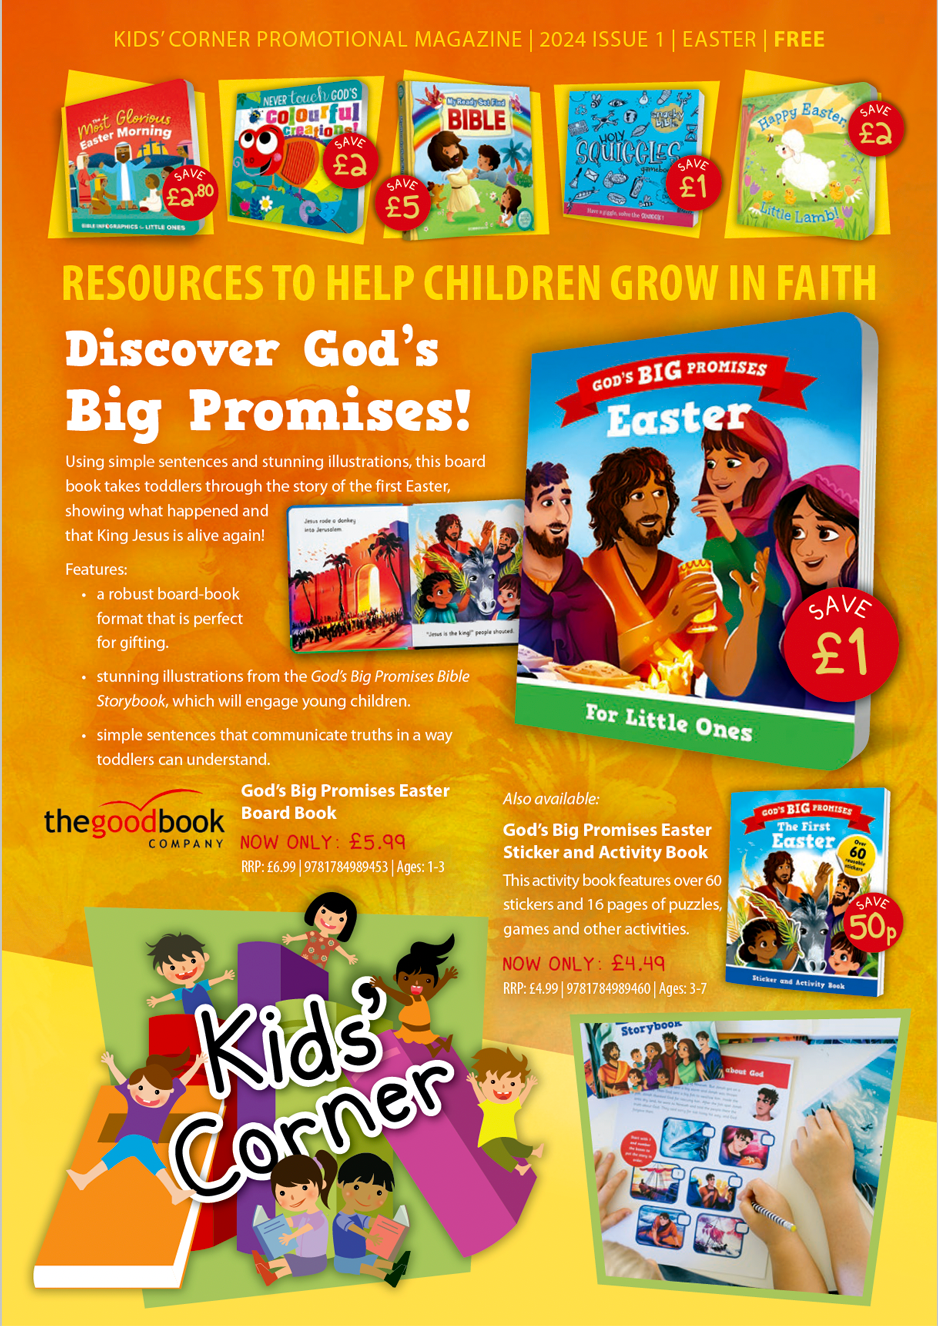 Kids Corner, Resources to help children grow in faith